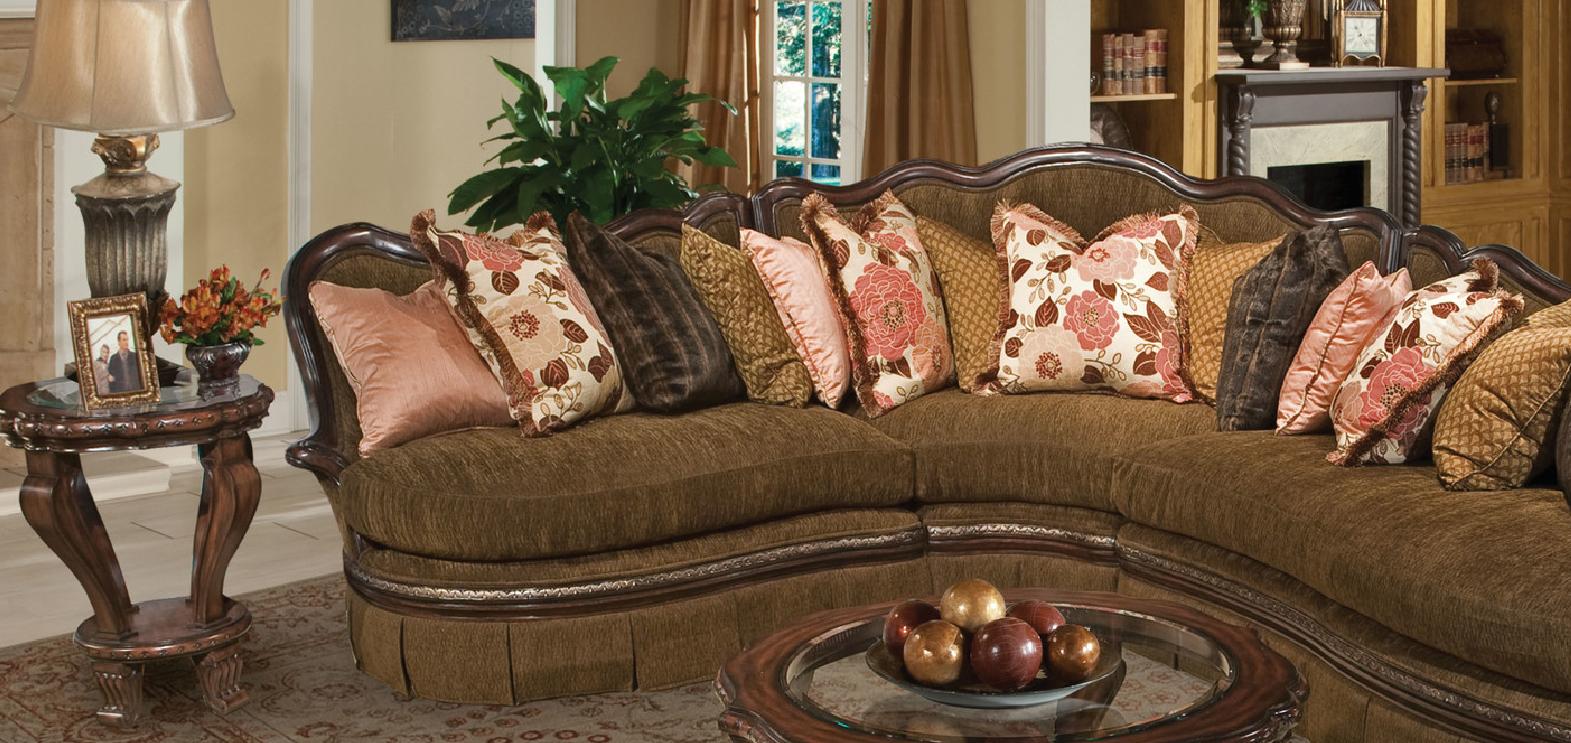 

    
Benetti's Bertina Luxury Walnut Sectional Sofa Set Dark Brown Finish Wood Trim 11847
